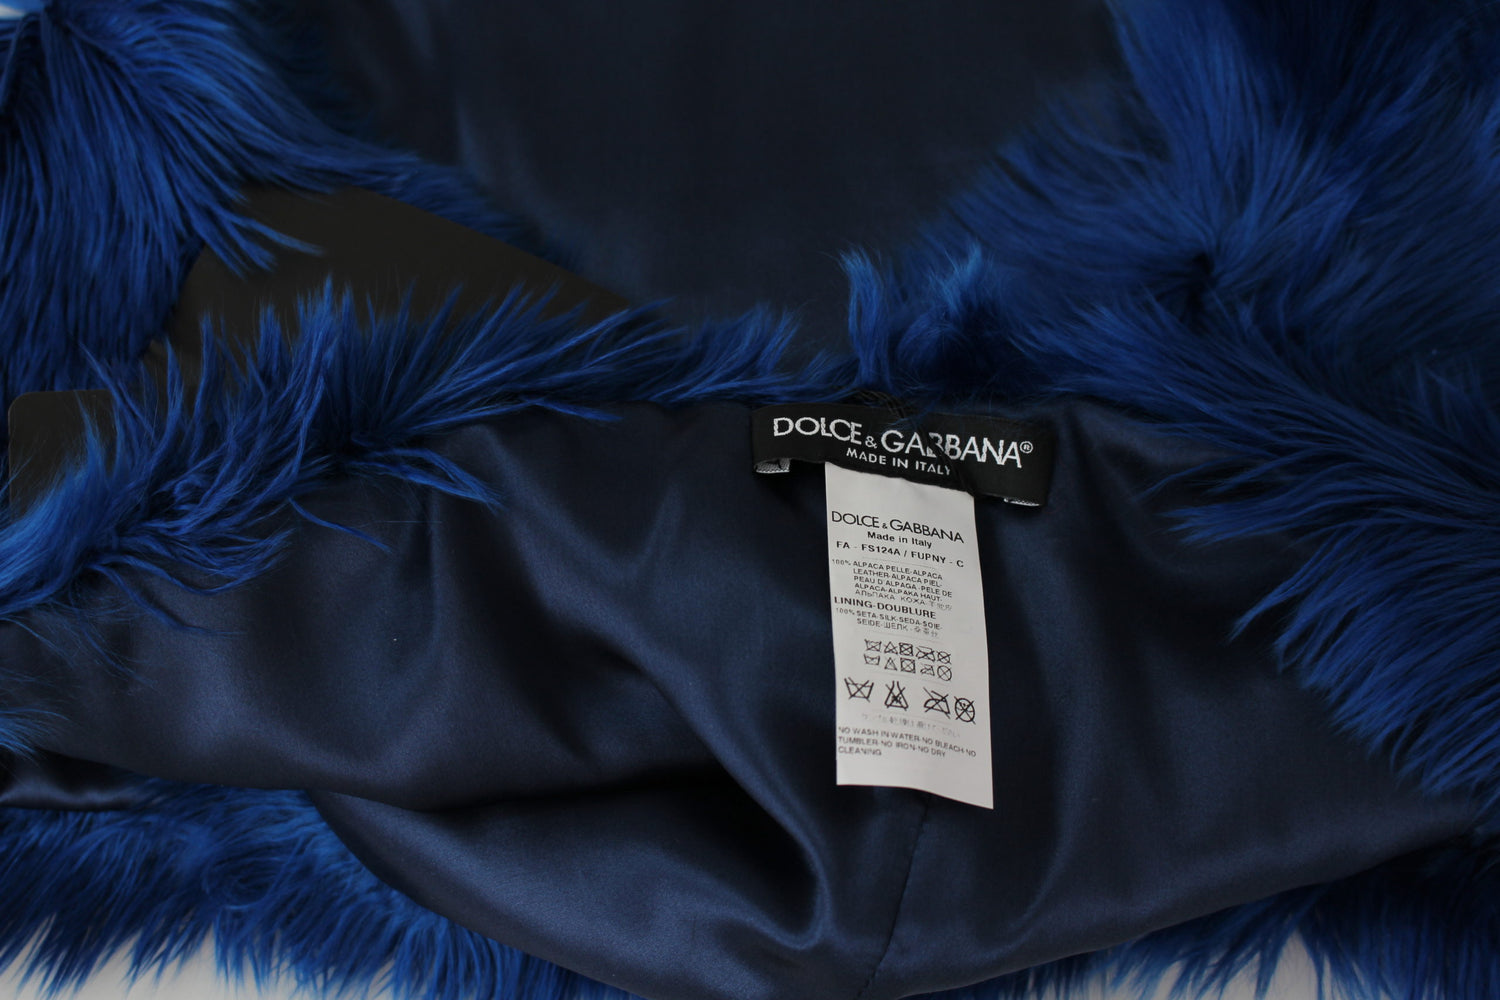 Scarf Blue Alpaca Leather Fur Neck Wrap Shawl